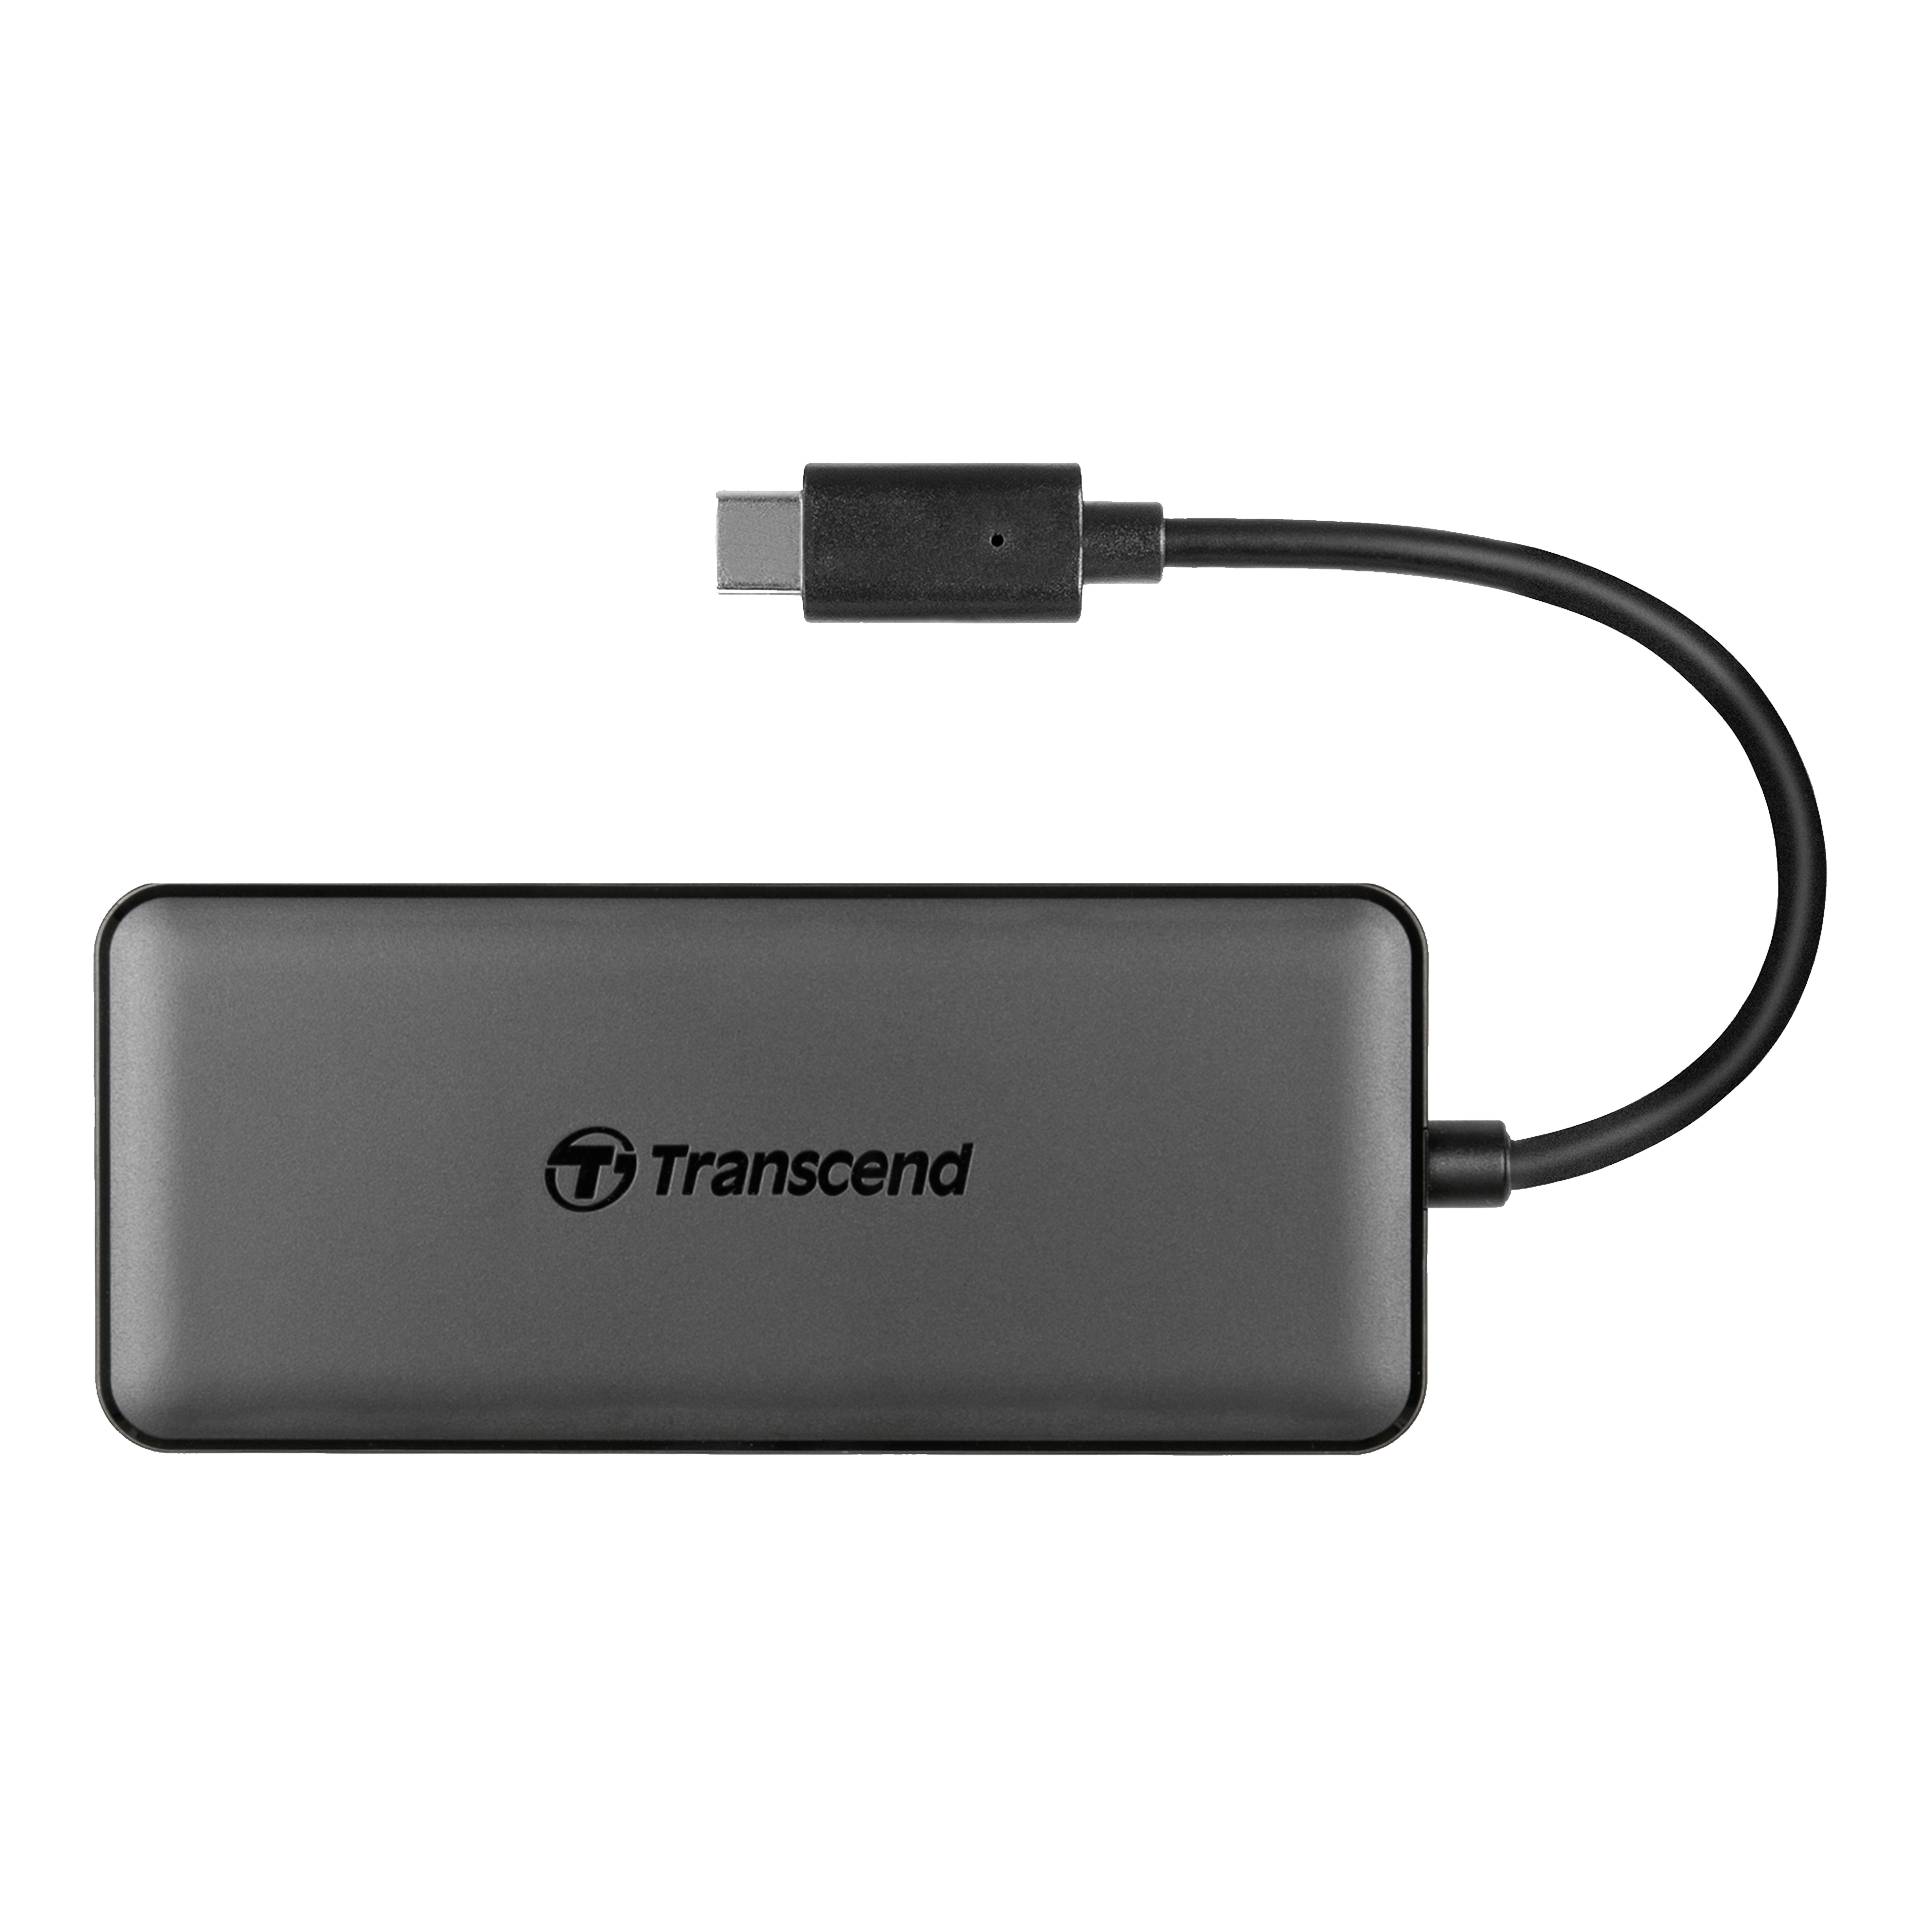 Transcend HUB5C USB 3.1 Gen 2